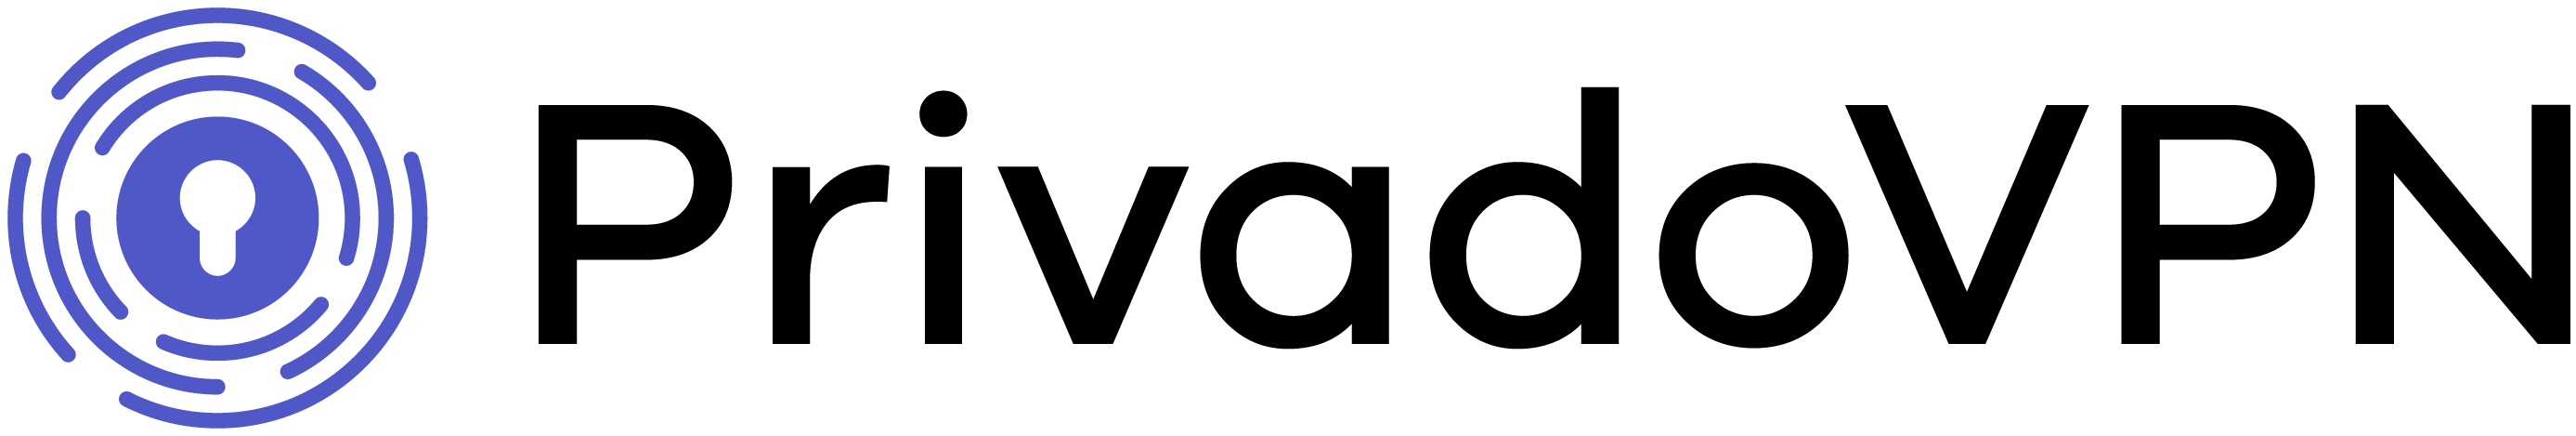 PrivadoVPN official logo